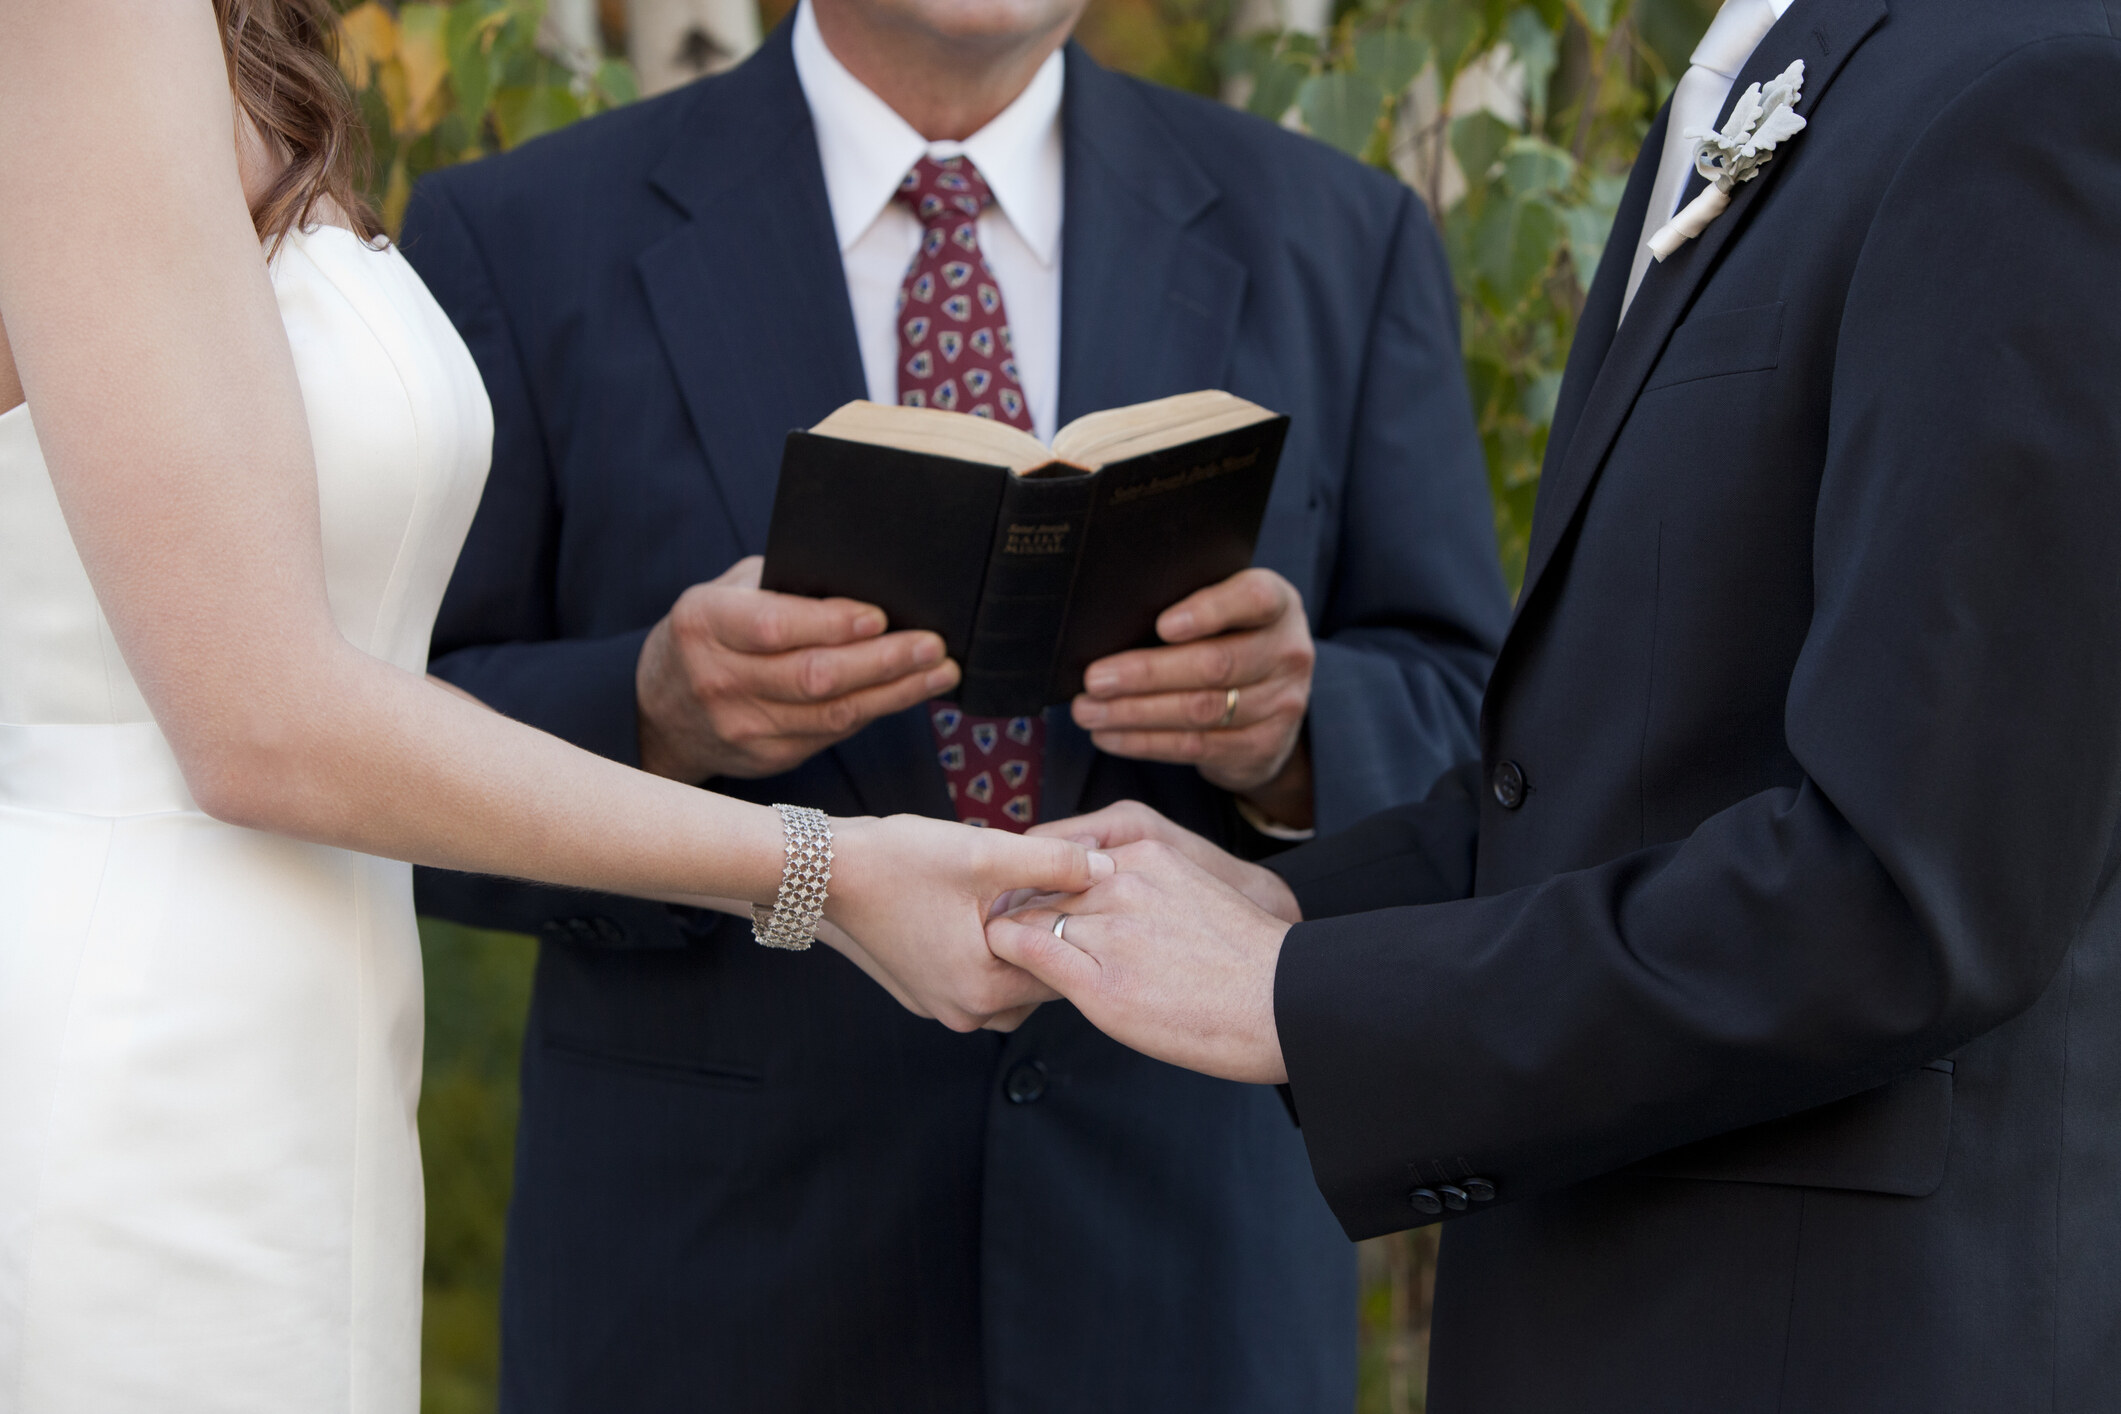 結婚誓詞莊嚴且具法律效力